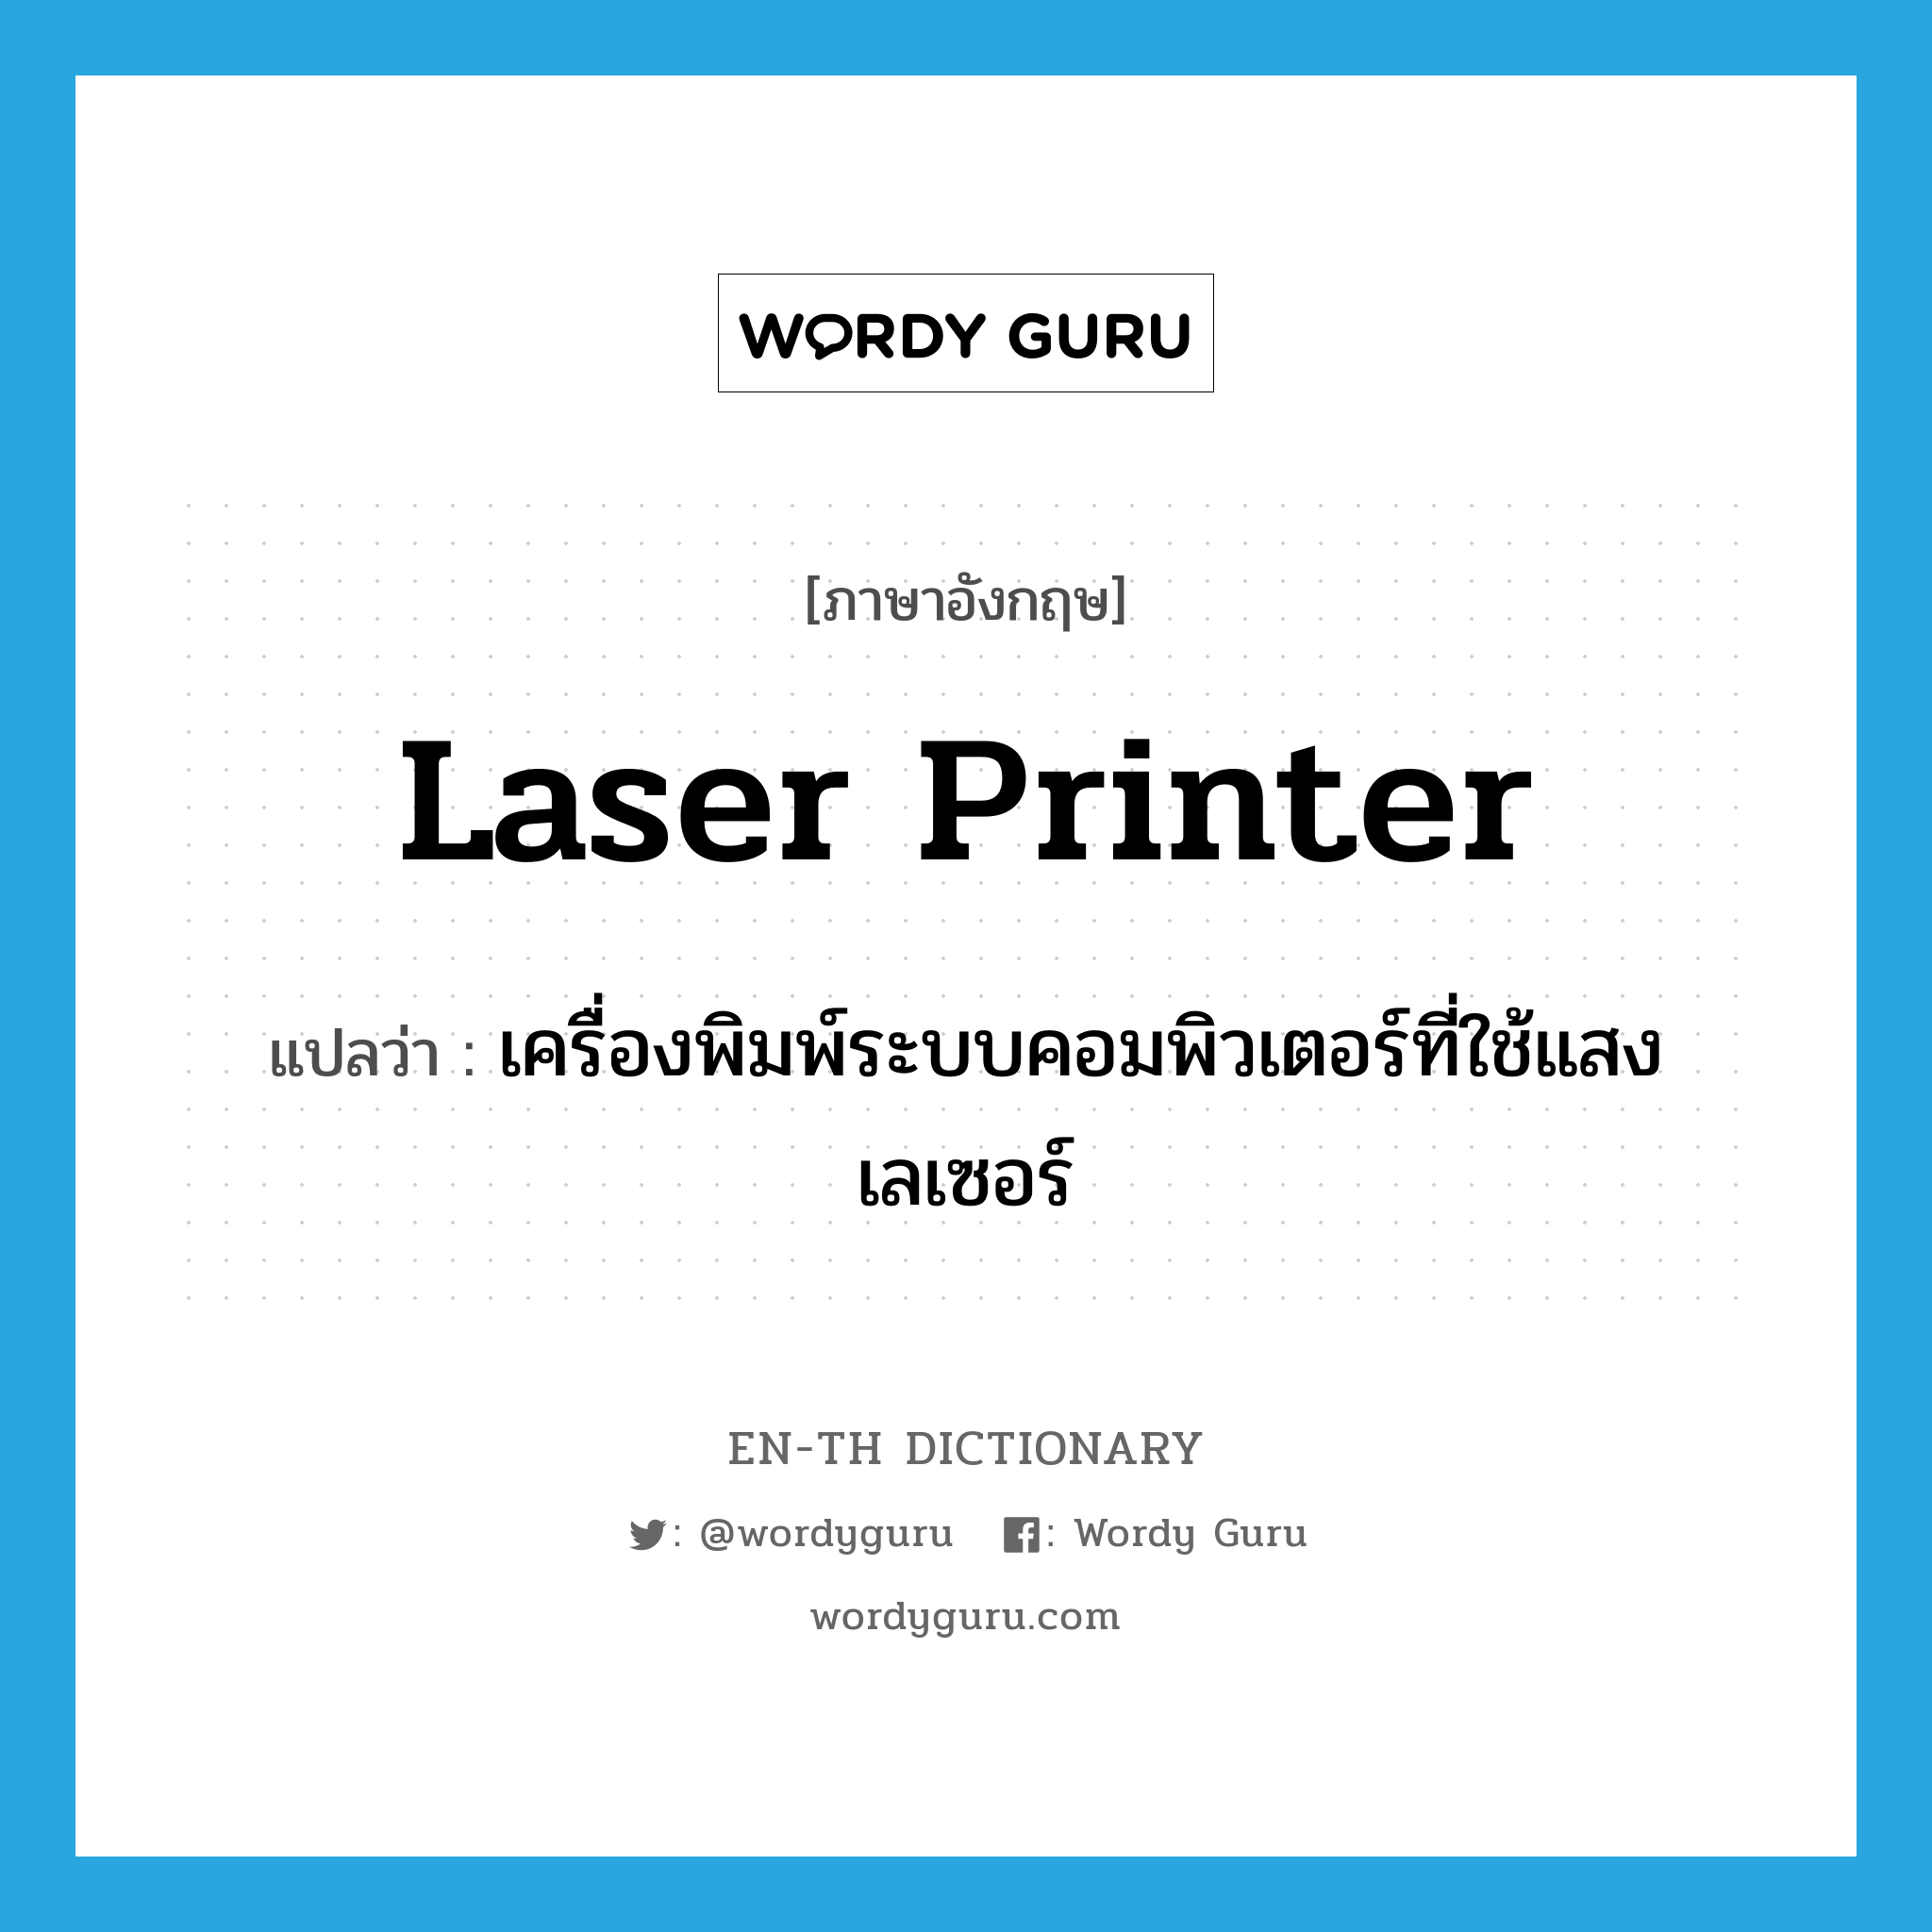 เครื่องพิมพ์ระบบคอมพิวเตอร์ที่ใช้แสงเลเซอร์ ภาษาอังกฤษ?, คำศัพท์ภาษาอังกฤษ เครื่องพิมพ์ระบบคอมพิวเตอร์ที่ใช้แสงเลเซอร์ แปลว่า laser printer ประเภท N หมวด N